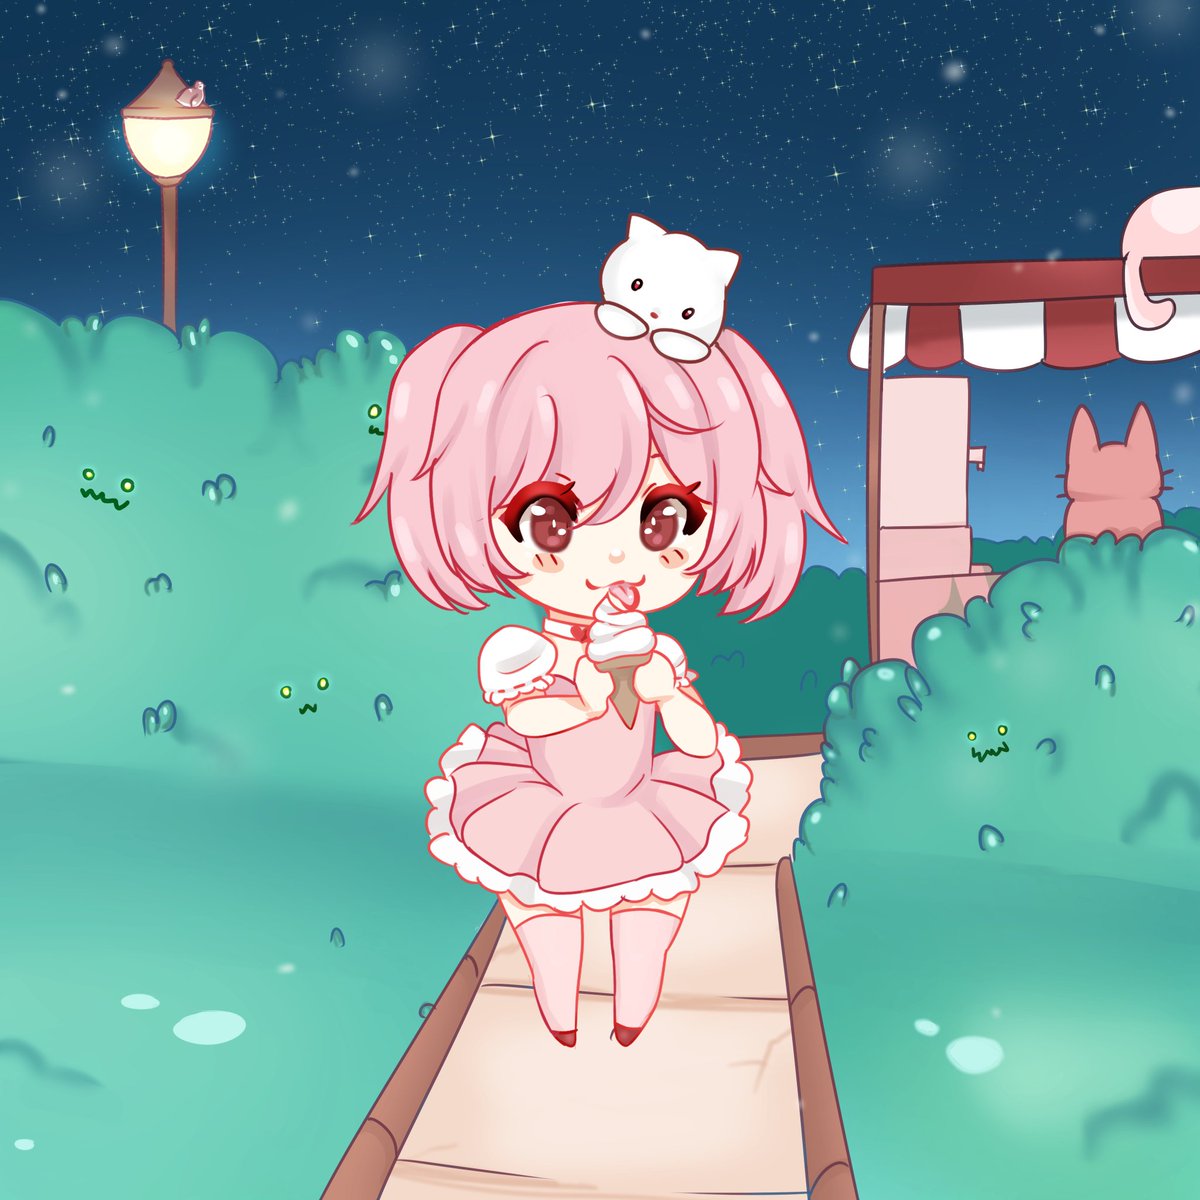 Ice cream 🍦 night 
#chibi #originalart #anime #AnimeArt